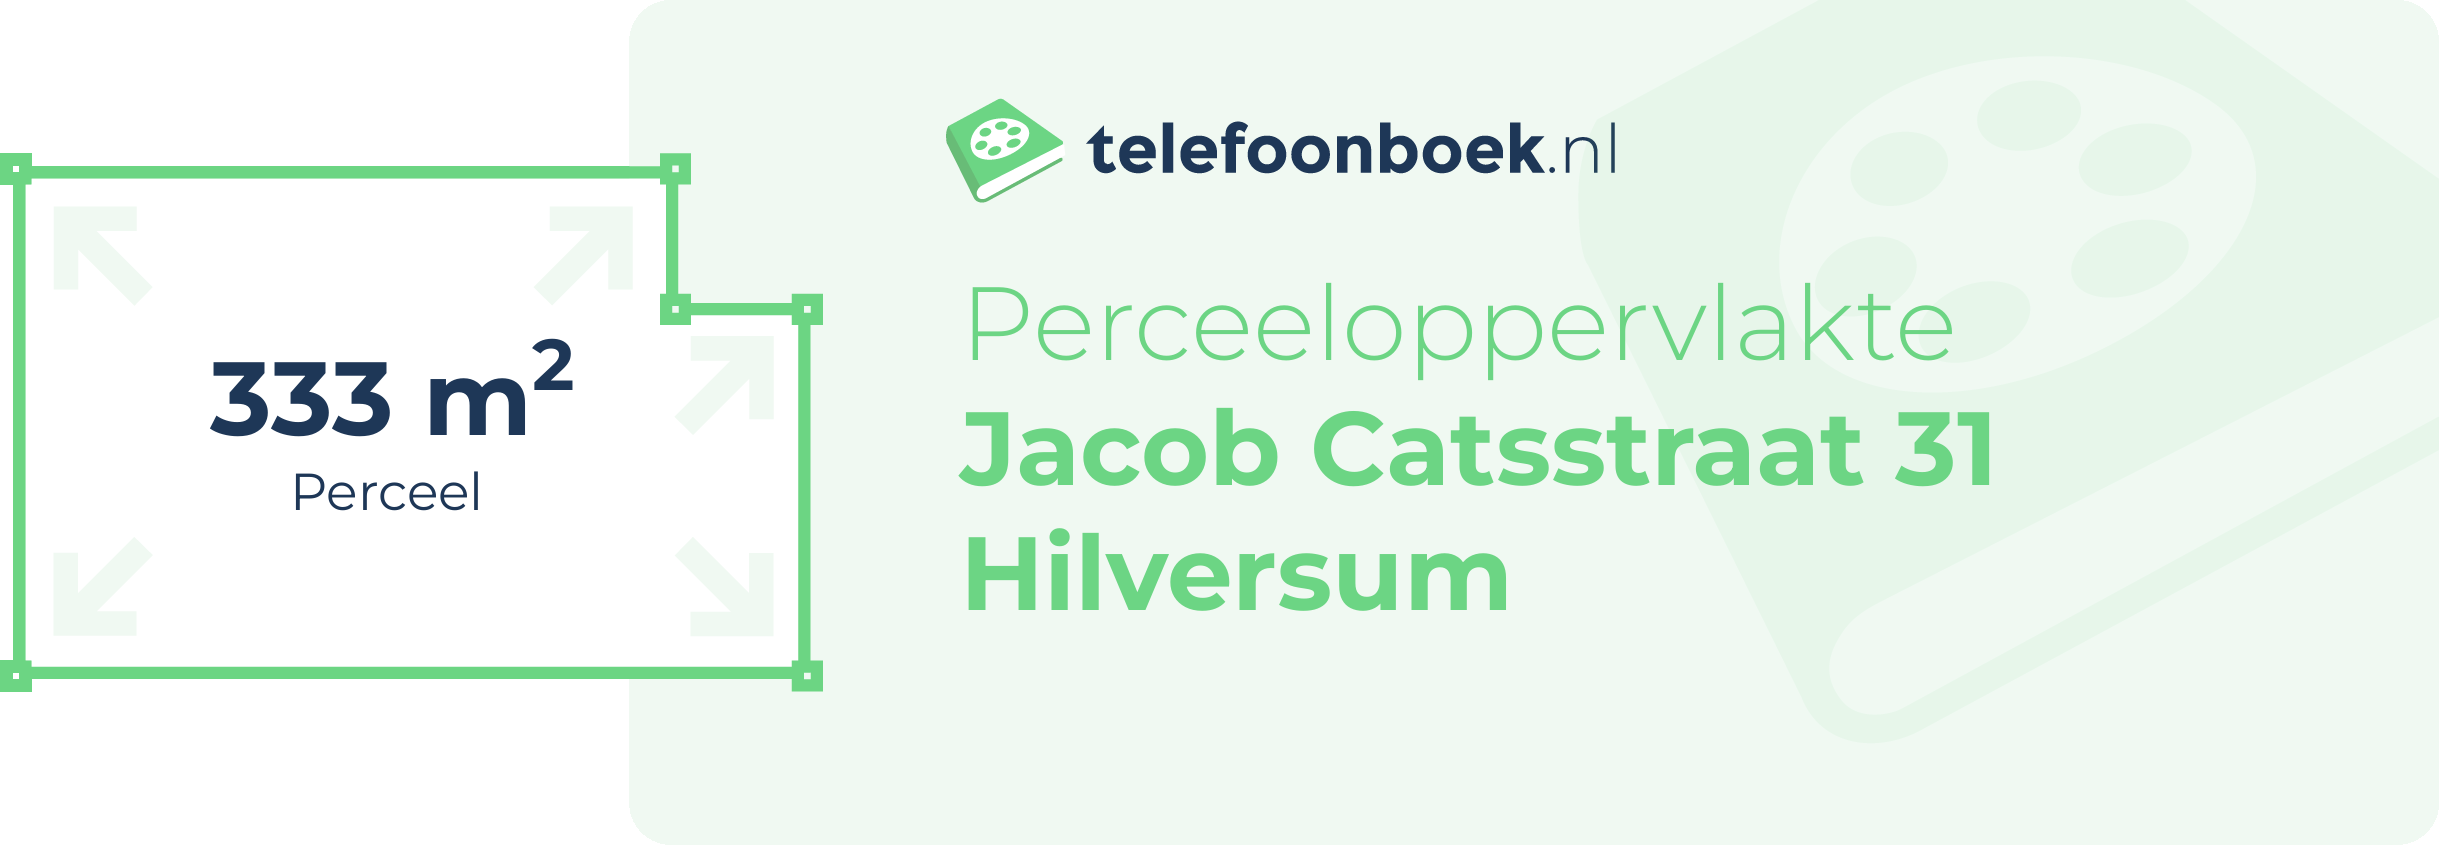 Perceeloppervlakte Jacob Catsstraat 31 Hilversum